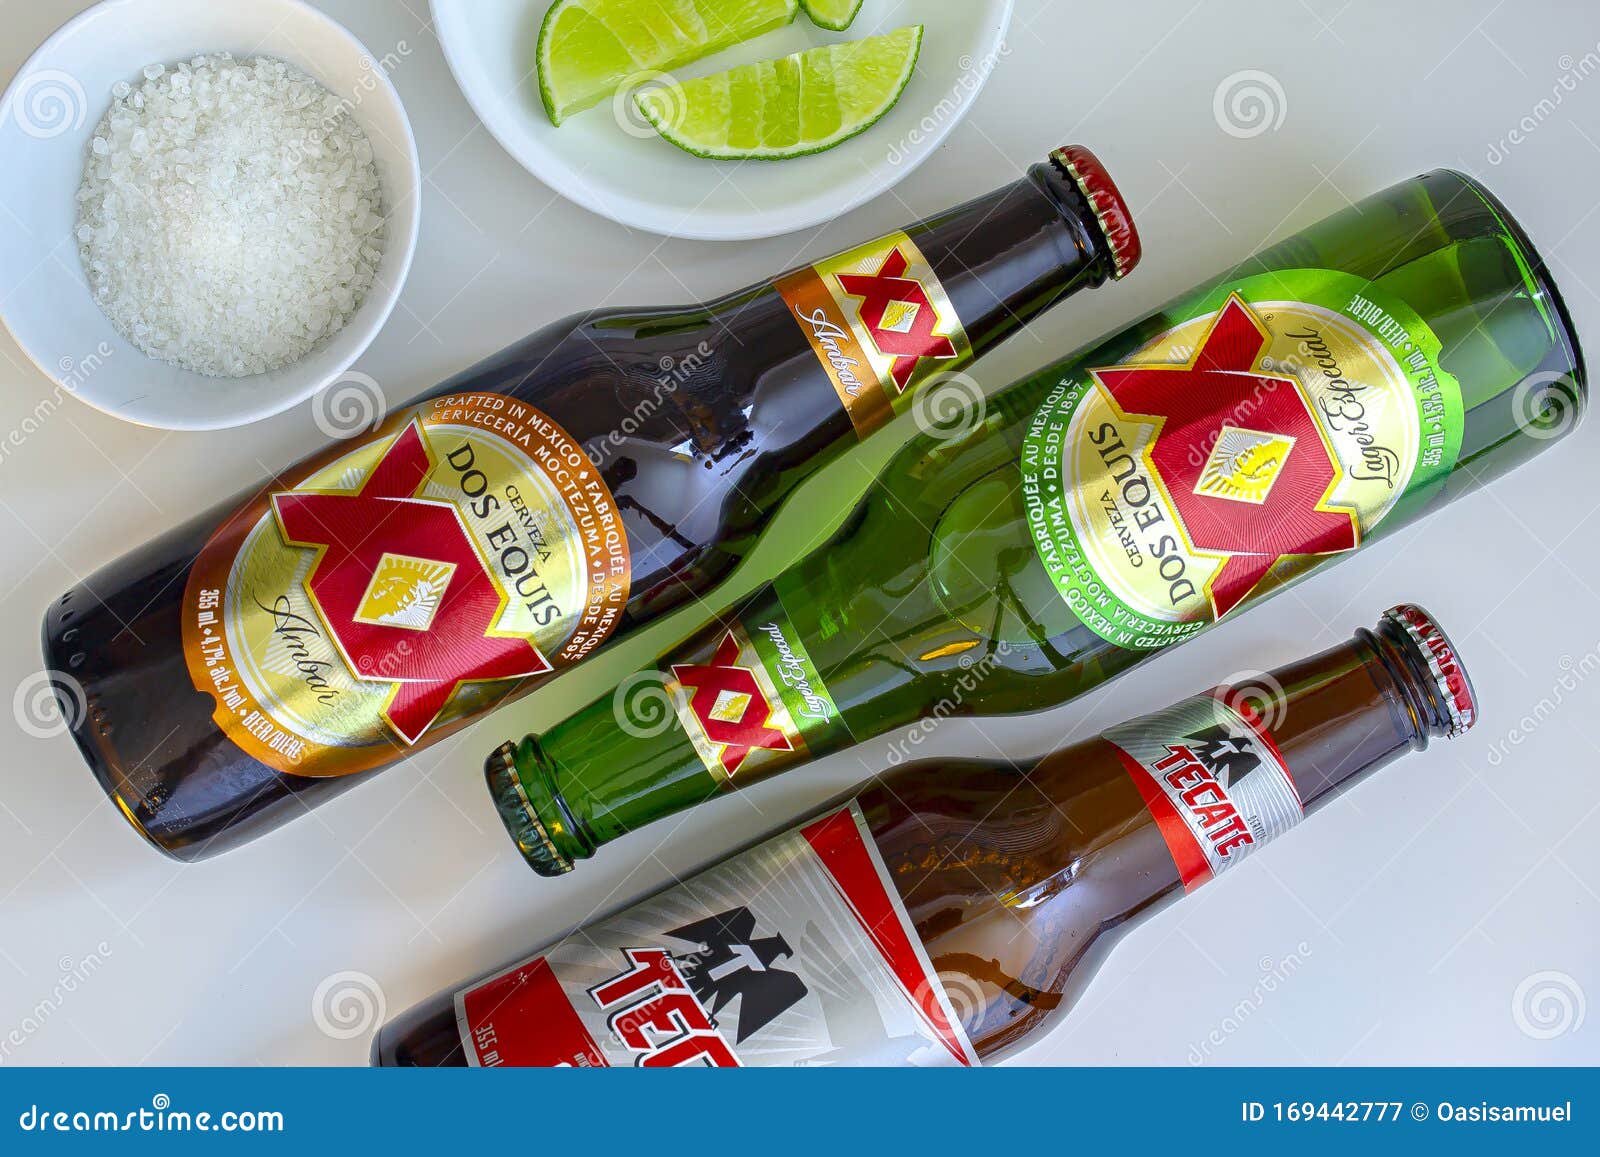 All Beers: Heineken lança cerveja Desperados com tequila e limão